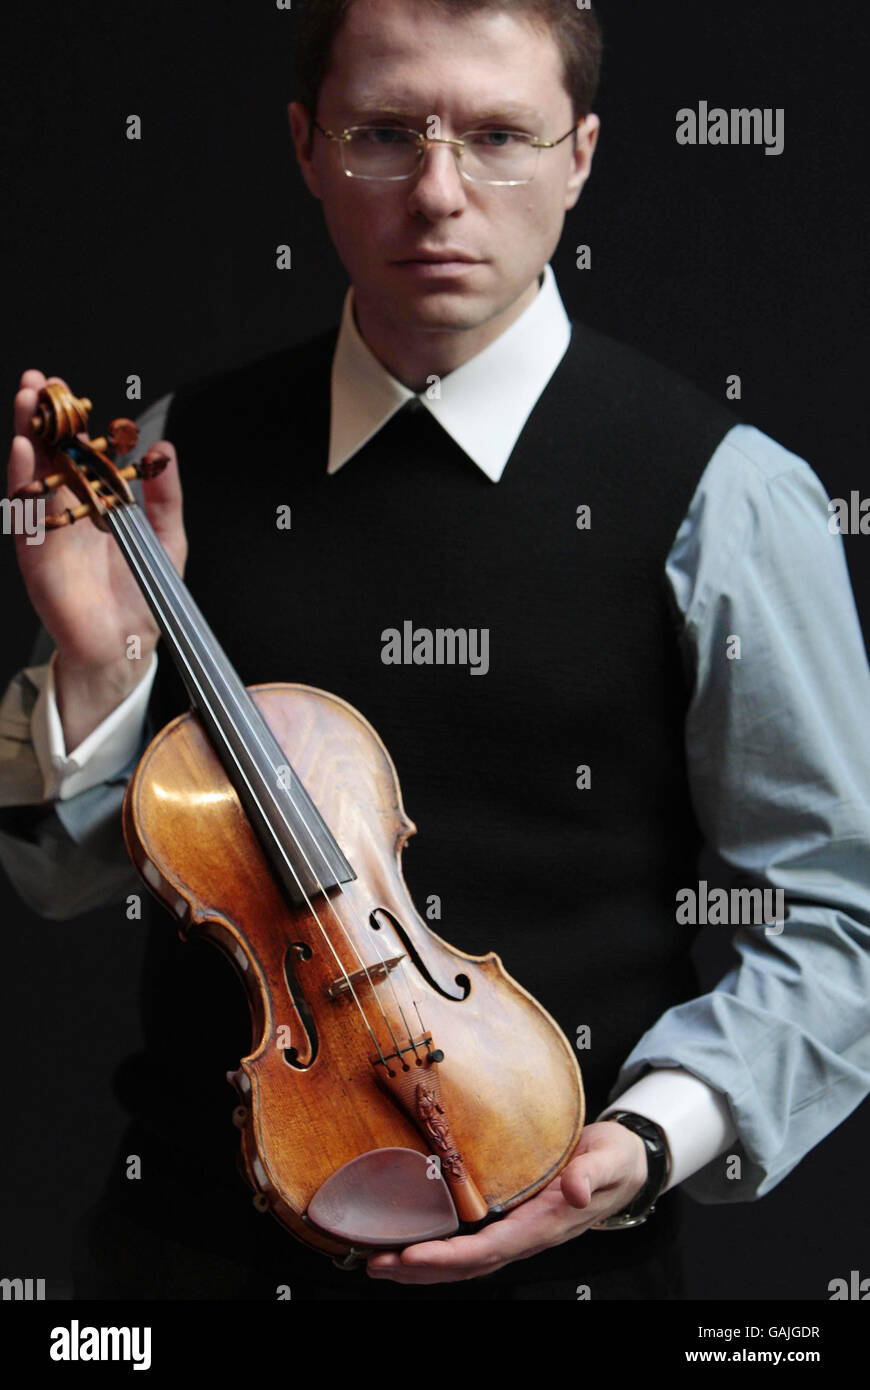 L'homme d'affaires russe Maxim Viktorov détient un violon Guarneri del Gesu  qui appartenait autrefois au compositeur Vieuxtemps, à Sotheby's à Londres,  qui a été vendu à Viktorov dans le cadre d'une vente